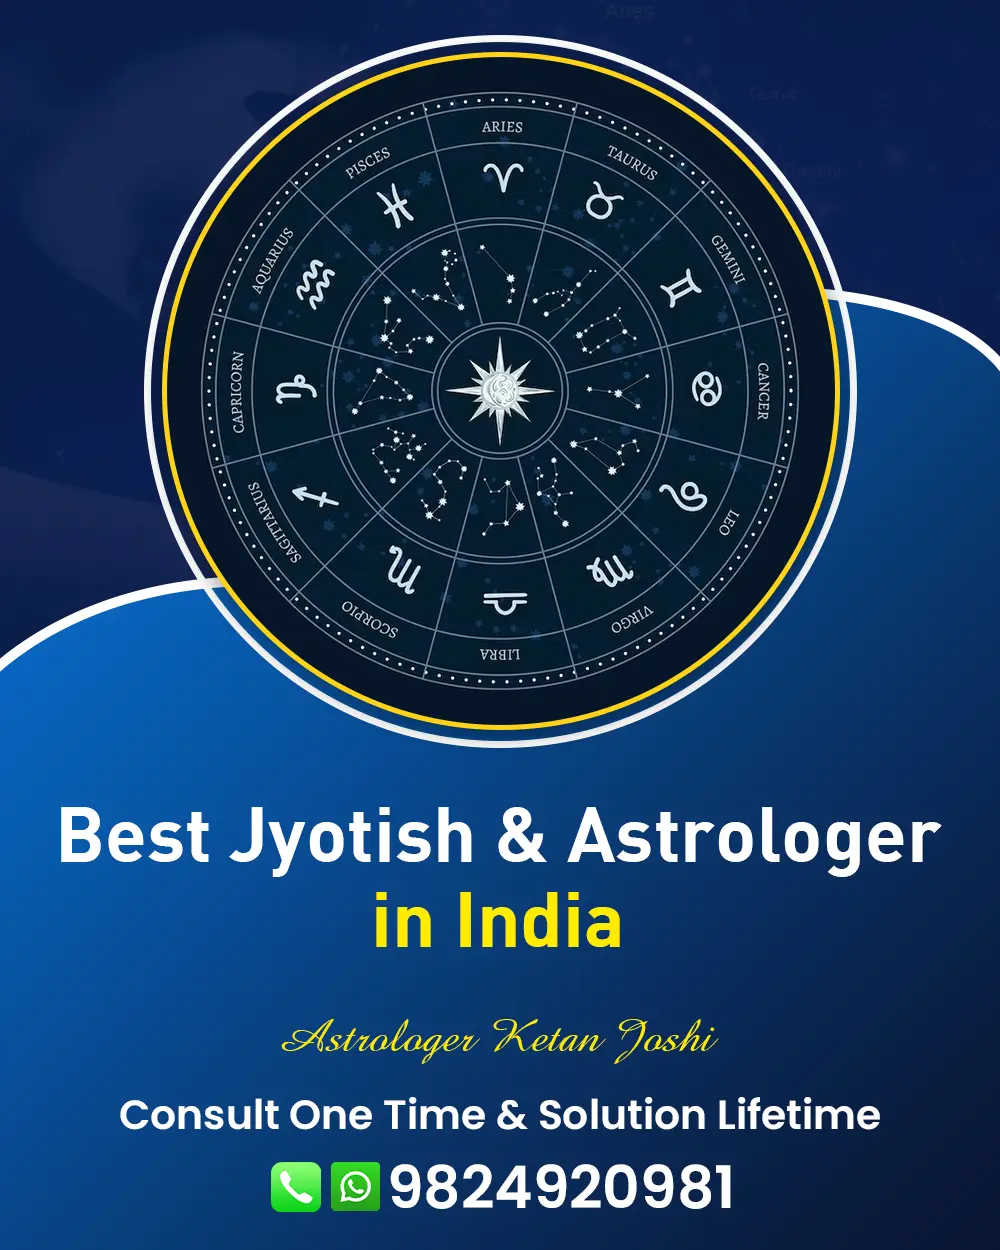 Best Astrologer In Kutch